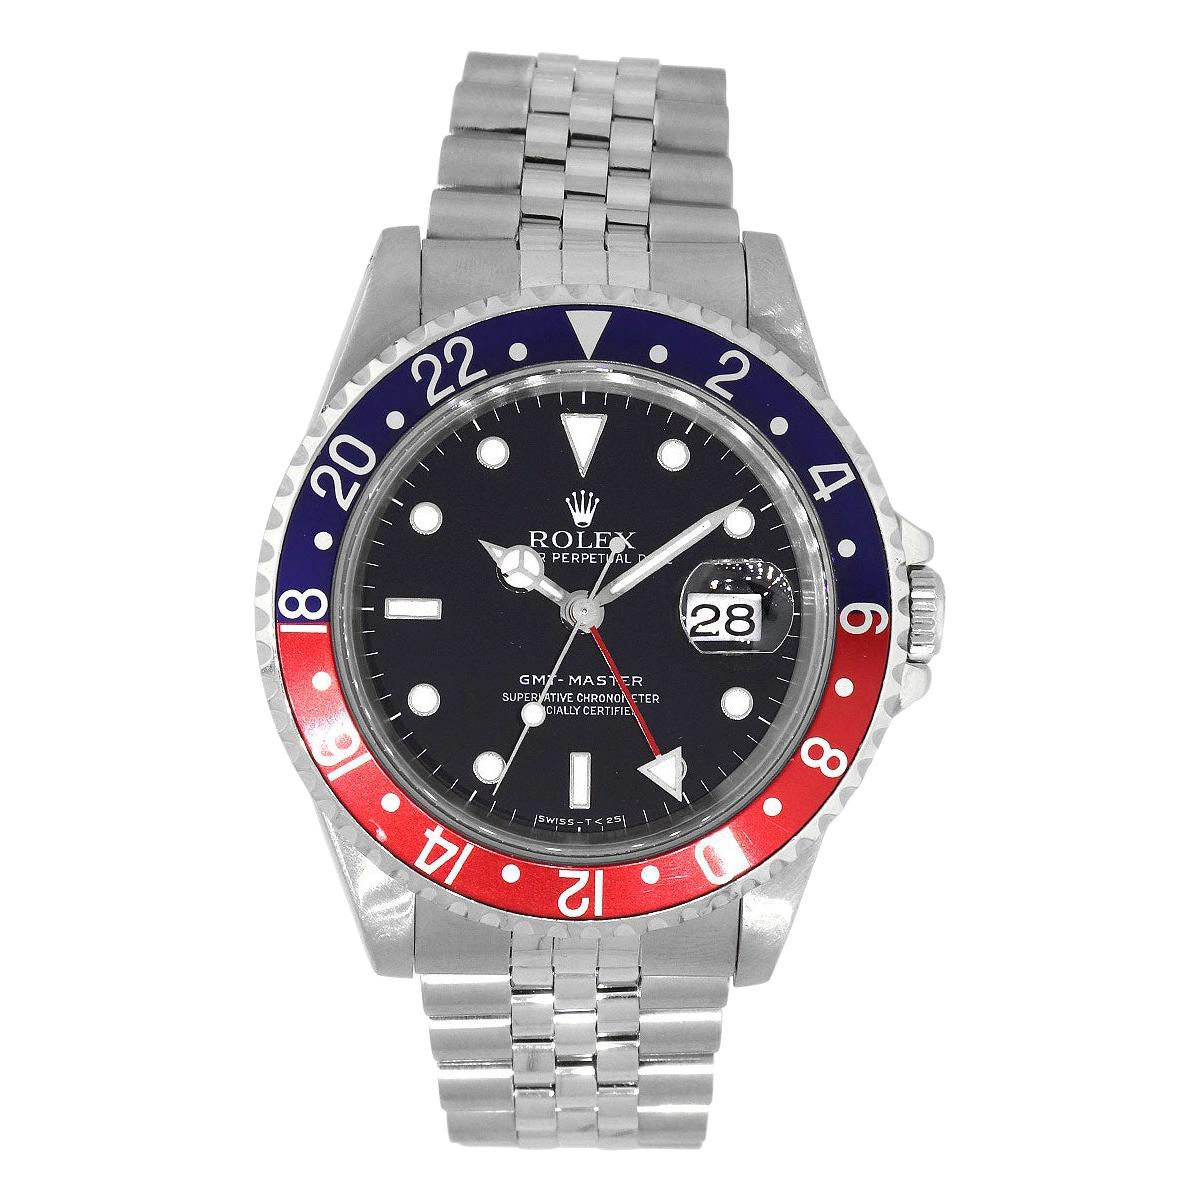 Rolex 16700 Master GMT "Pepsi" Watch